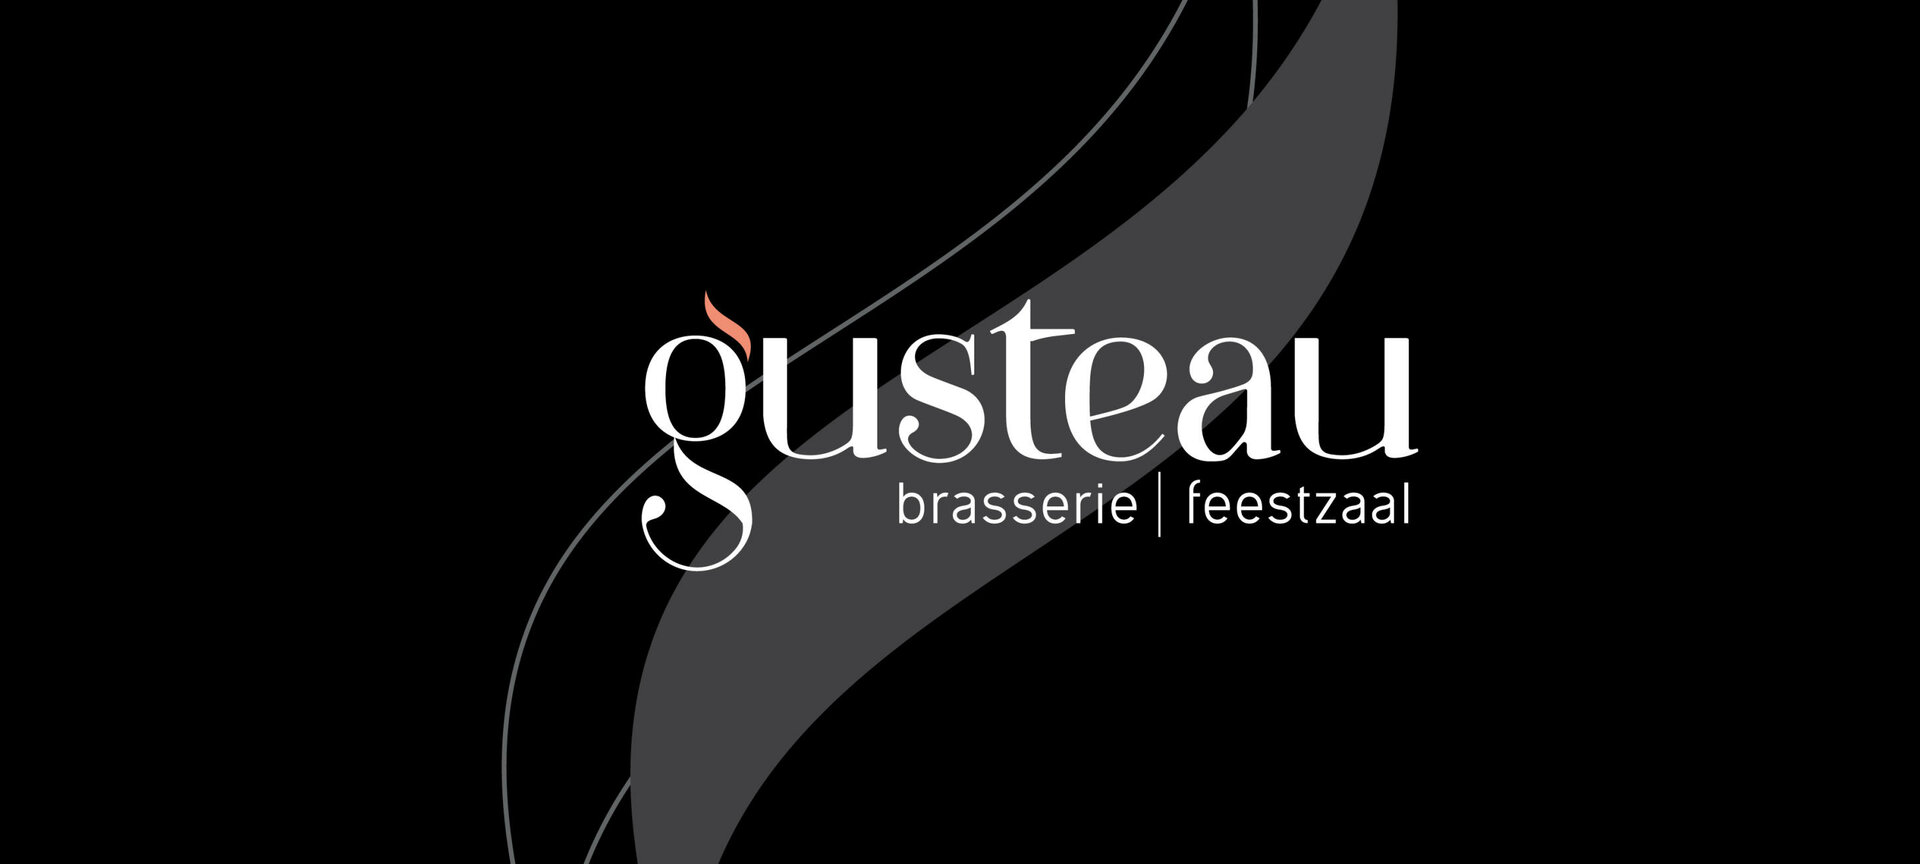 Brasserie Gusteau - feestzaal